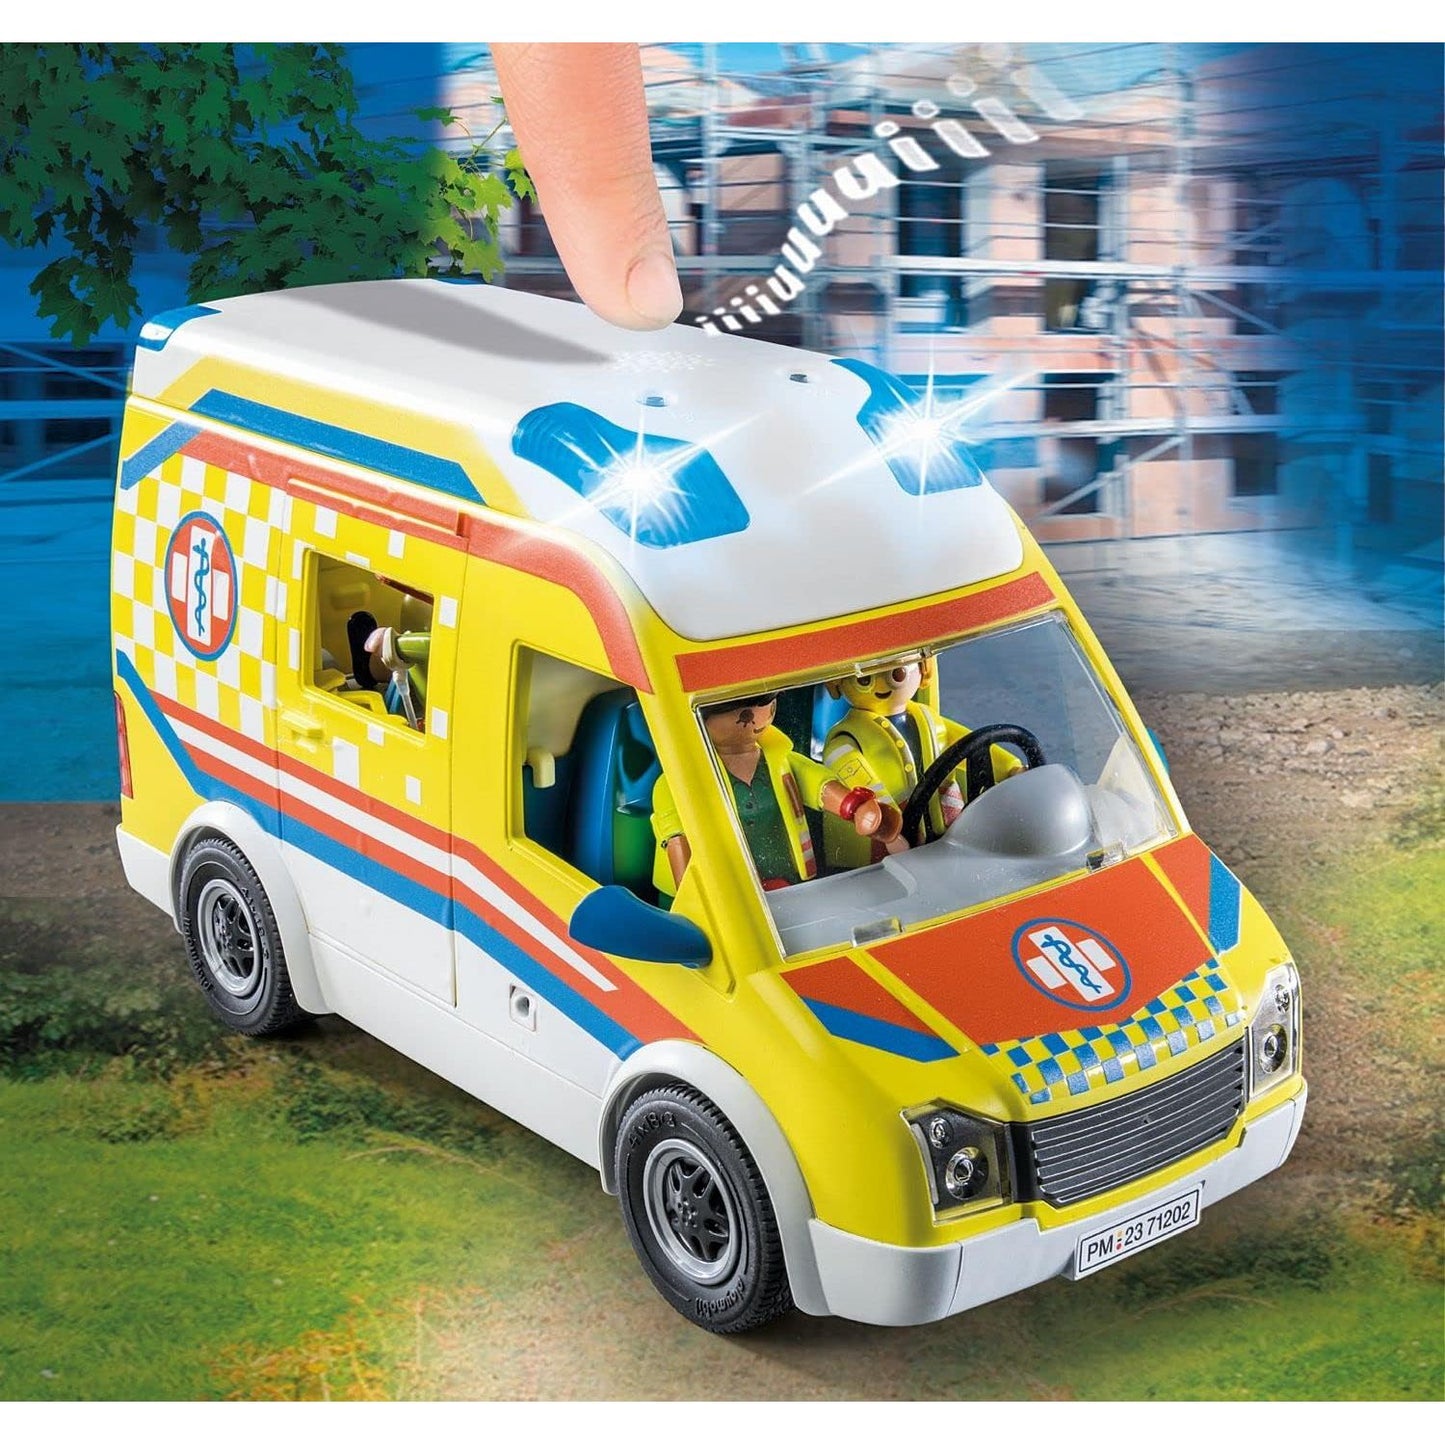 City Life Ambulance